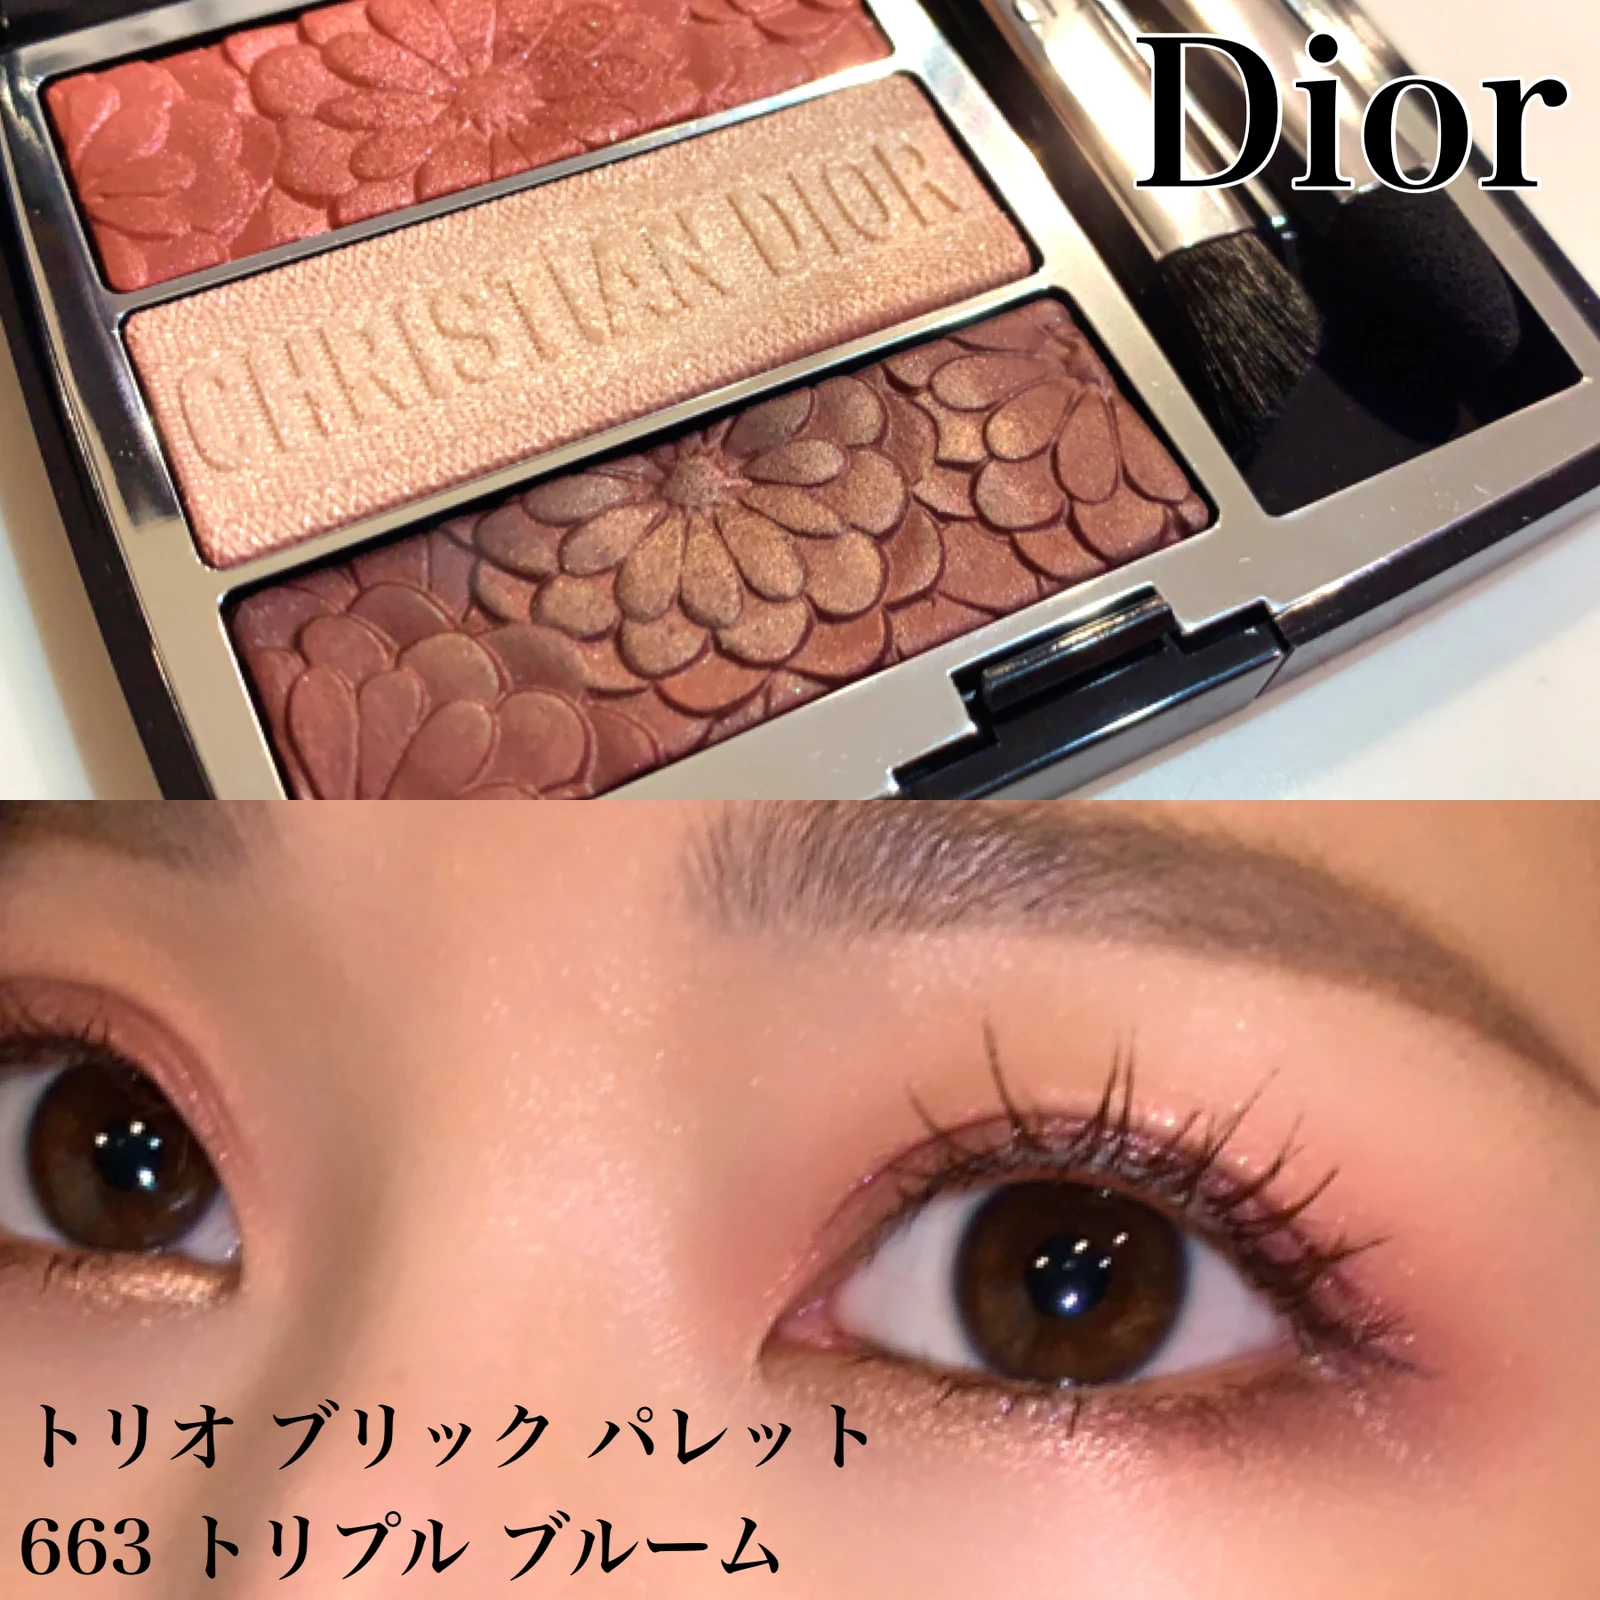 Diorの春🌸トリオブリックパレット663 | einaが投稿したフォトブック 